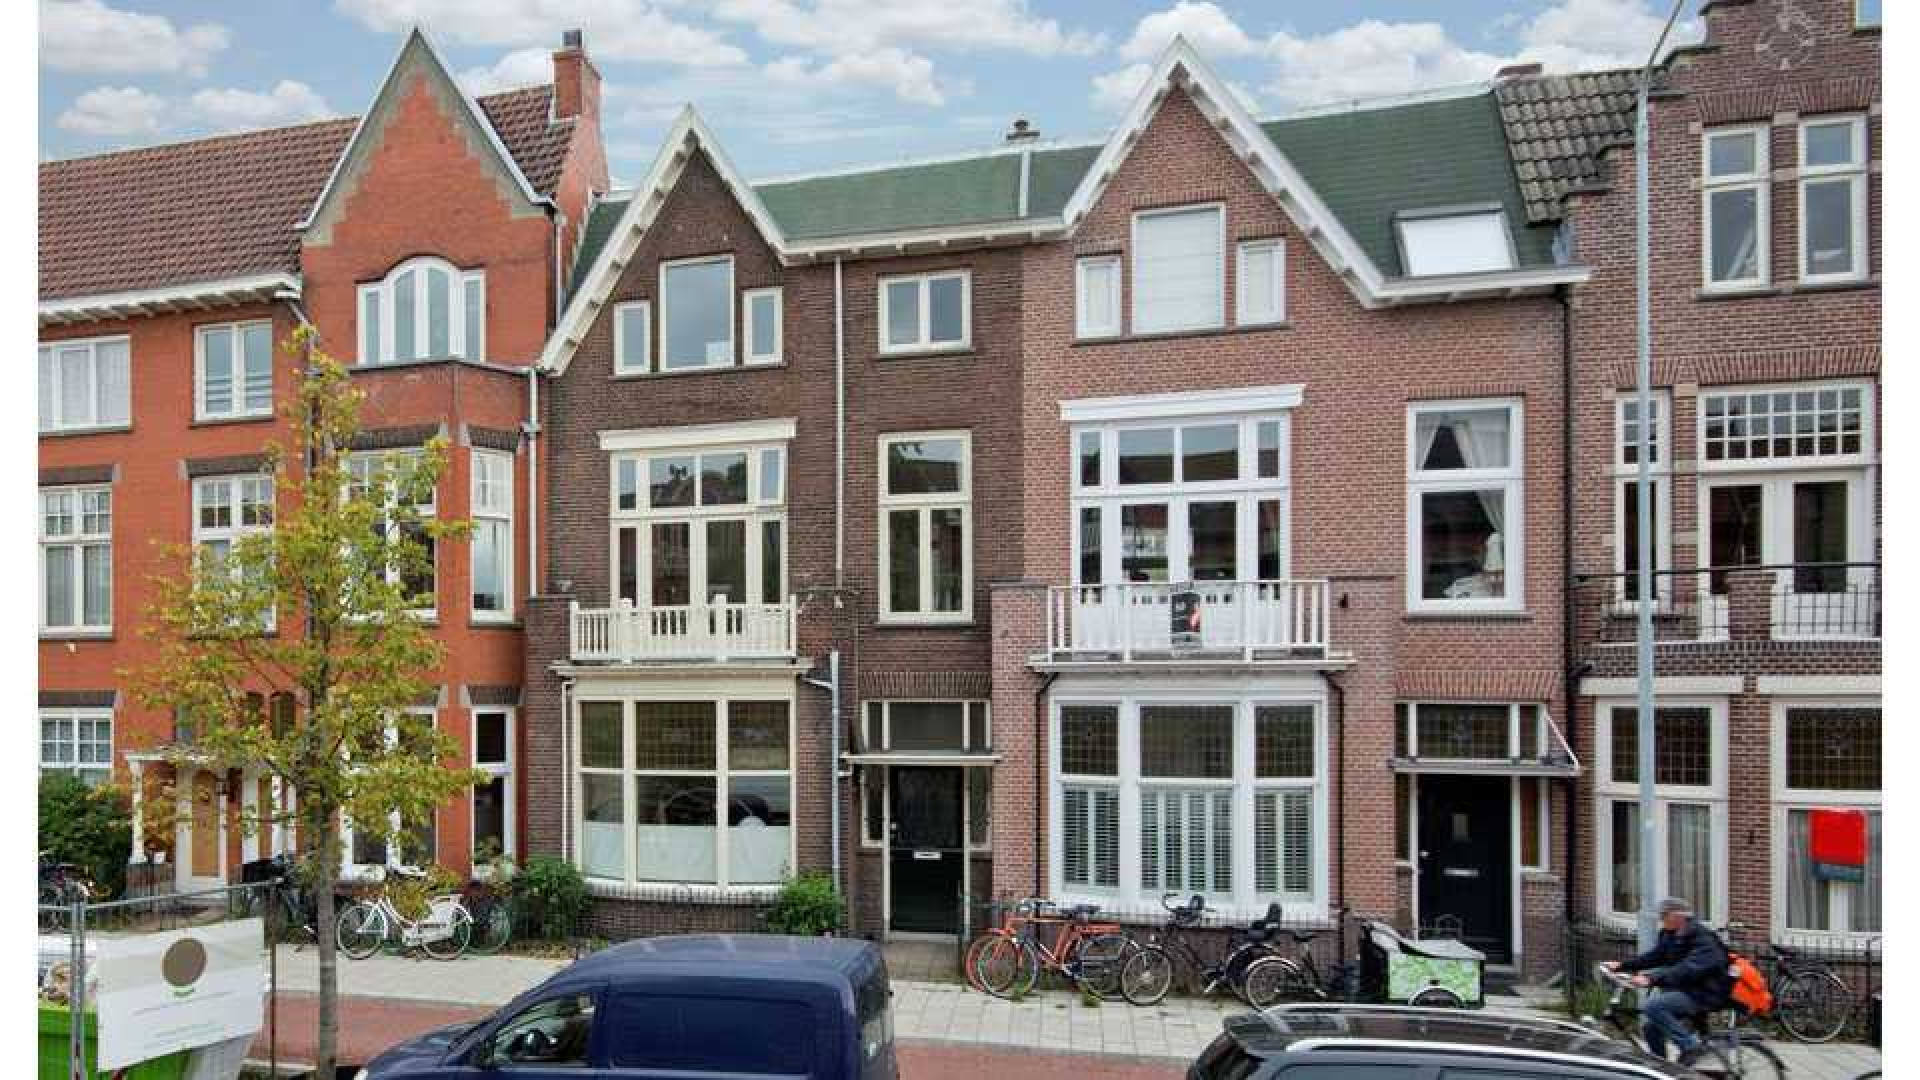 Familie zet huis Joost Zwagerman te koop. Zie foto's 1